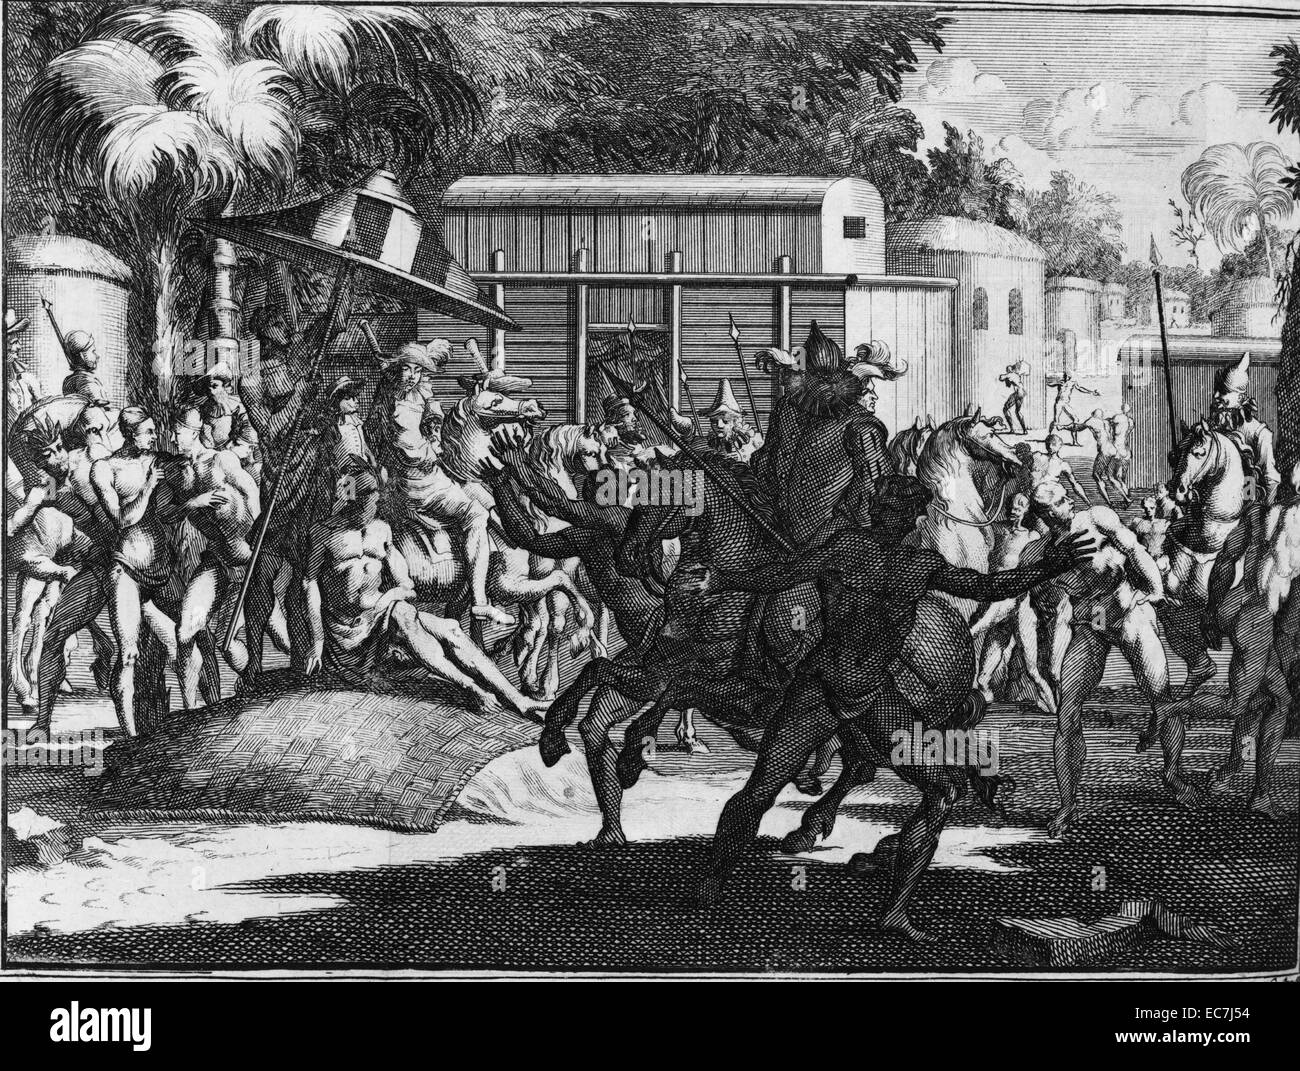 La manière dont les Toscaluça a reçu le général, 1731. Hernando de Soto était un explorateur et conquistador espagnol qui a dirigé la première expédition Européenne sur le territoire de l'United States. Banque D'Images